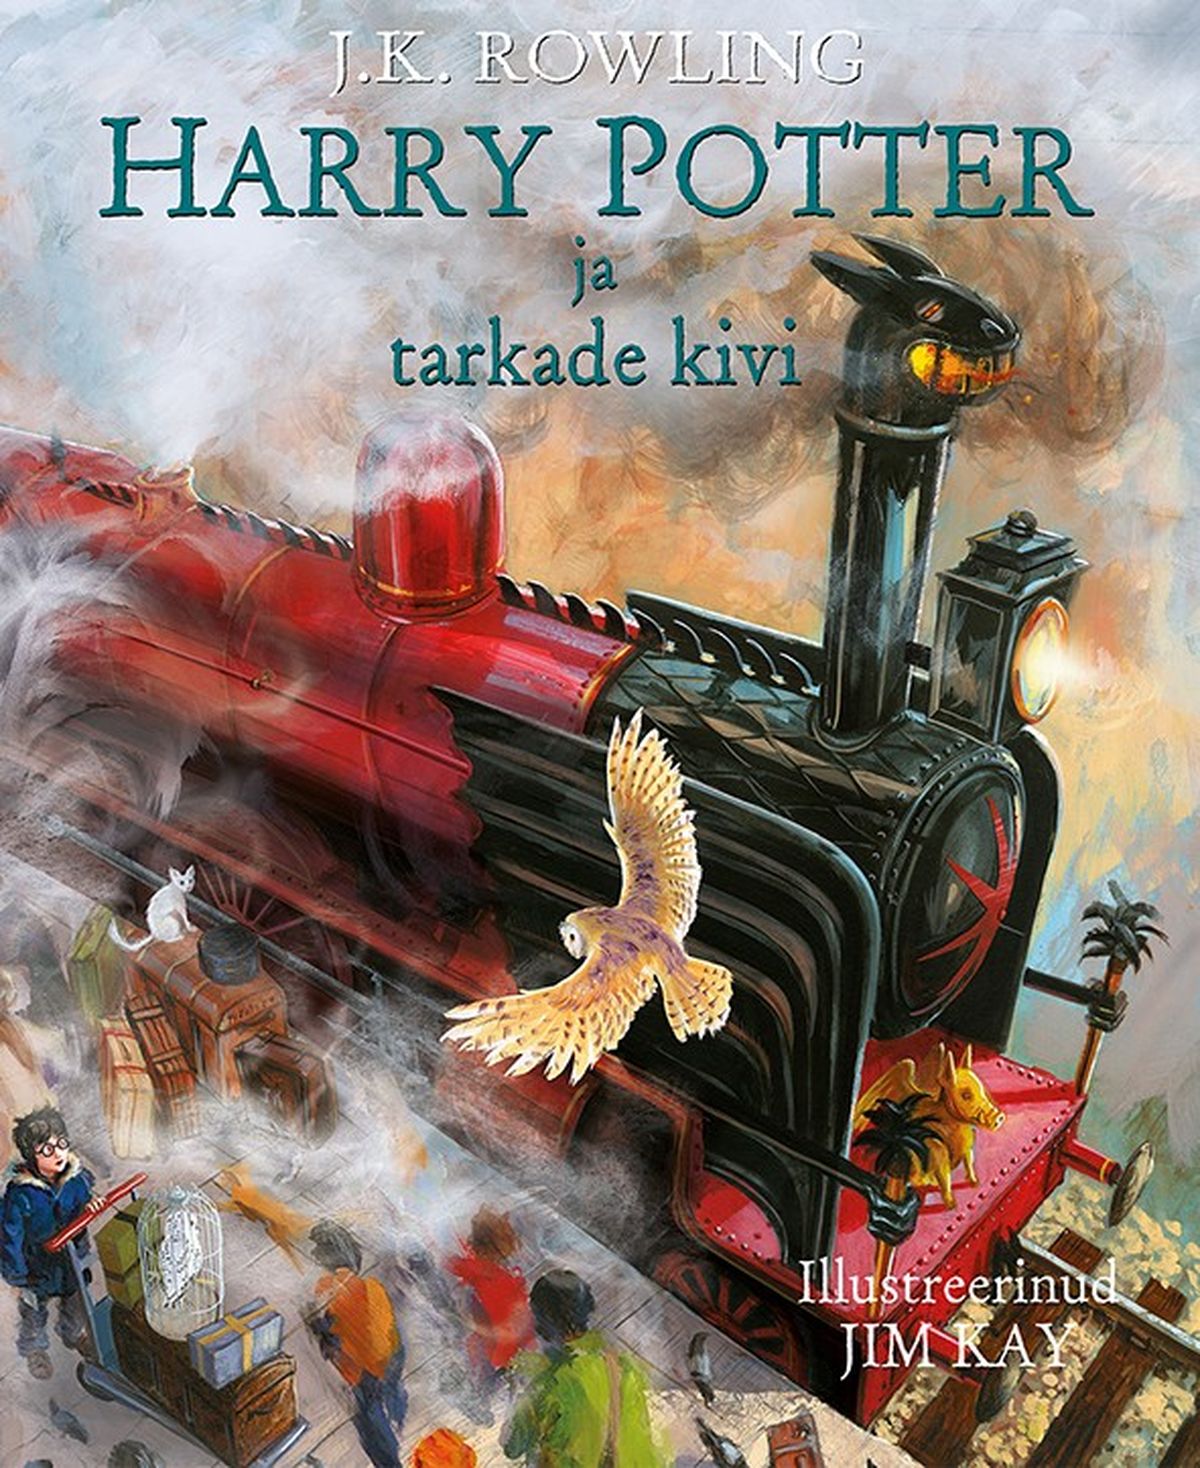 J.K. Rowlingi illustreeritud väljaanne klassikateosest „Harry Potter ja tarkade kivi”.